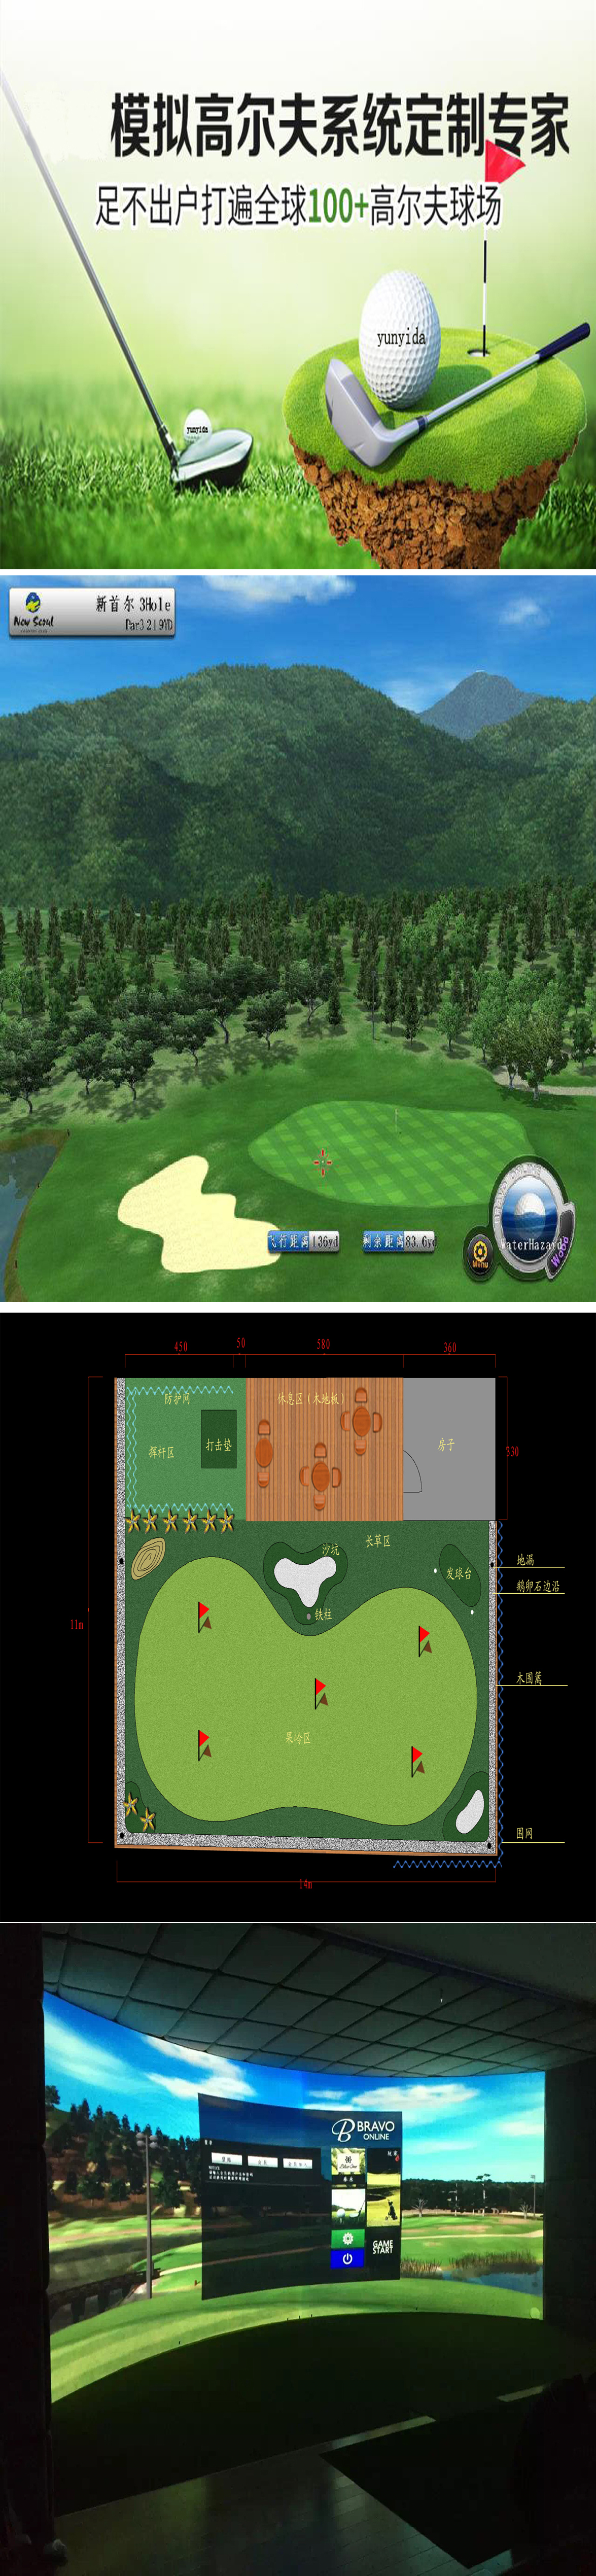 室内高尔夫系统  66.jpg